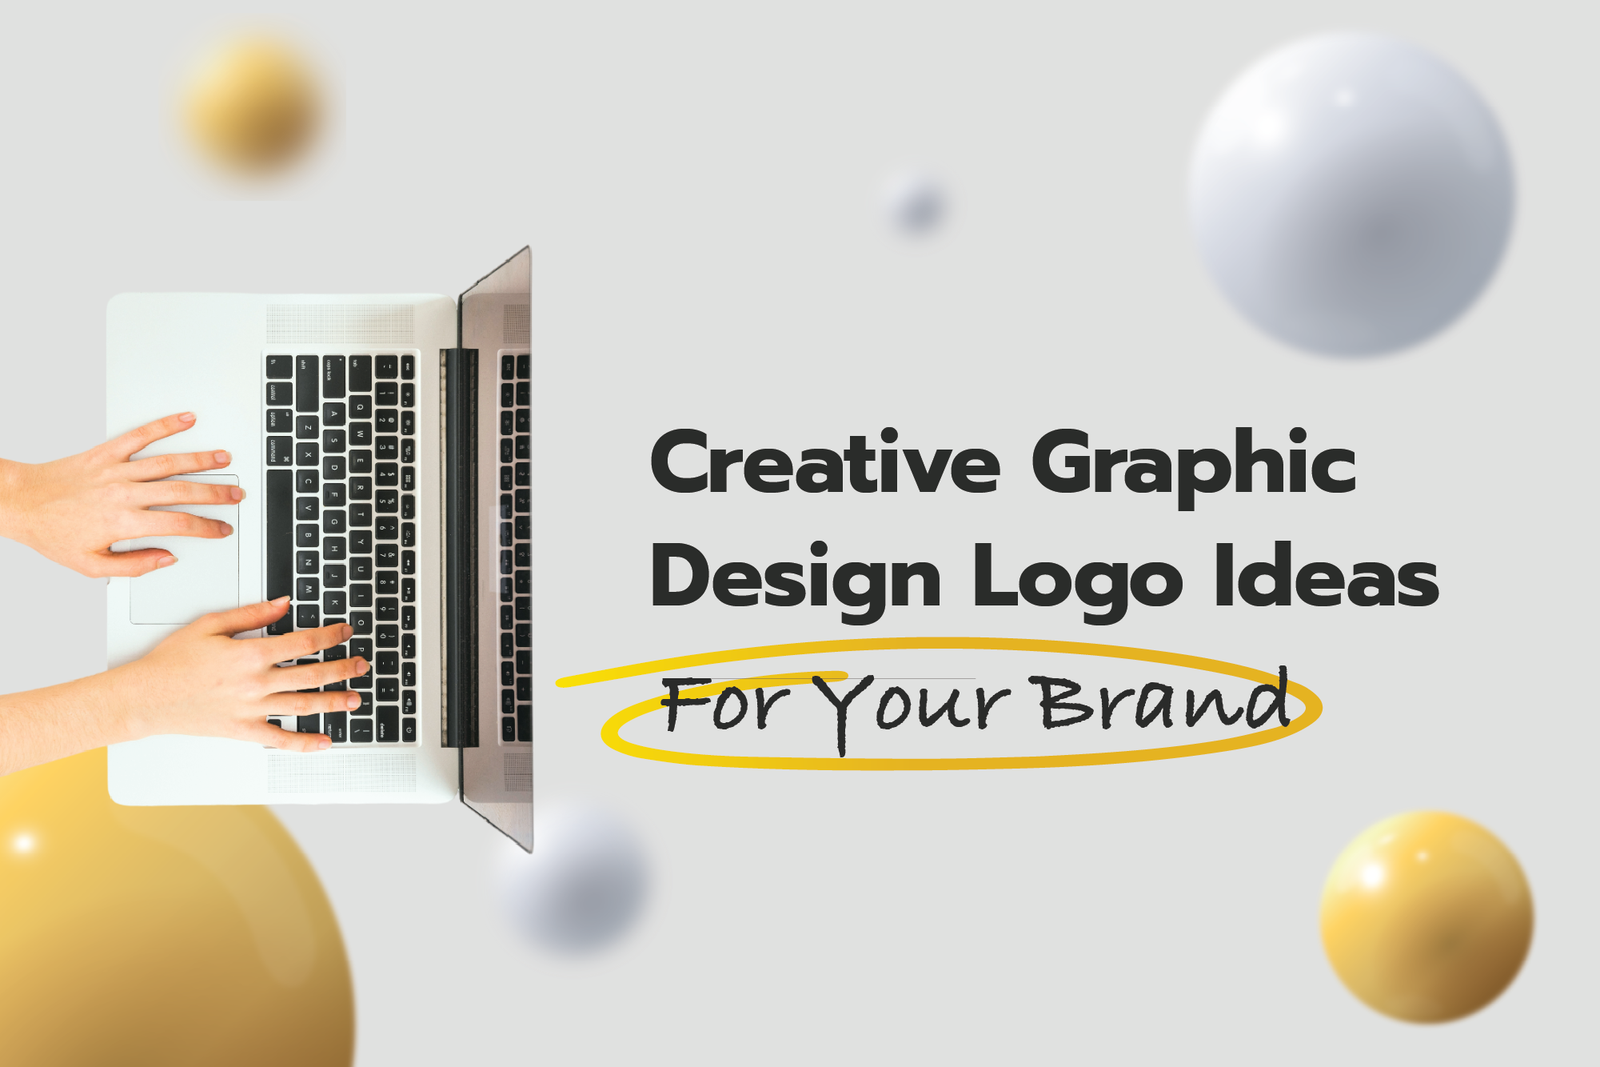 Graphic design logo ideas